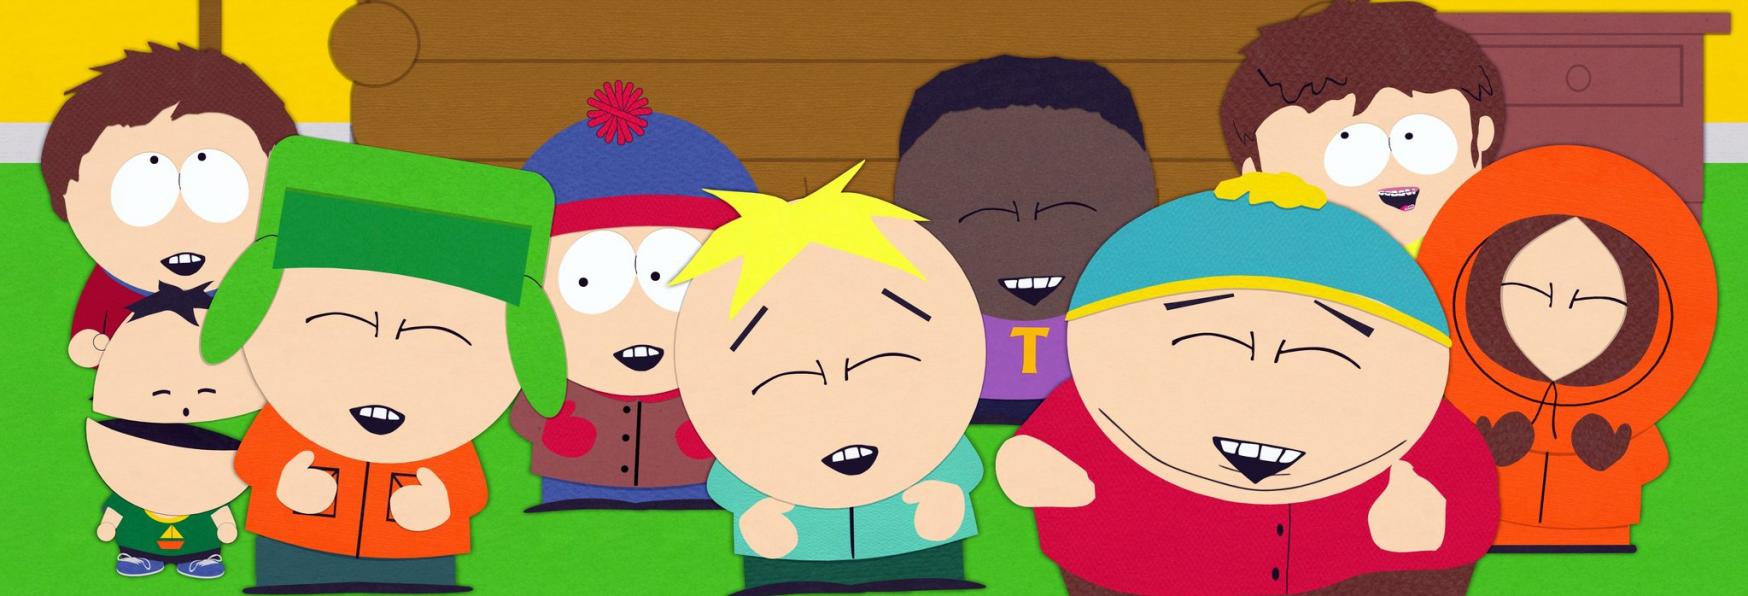 Ulteriore Rinnovo per South Park! Assicurate altre 4 Stagioni della Serie TV